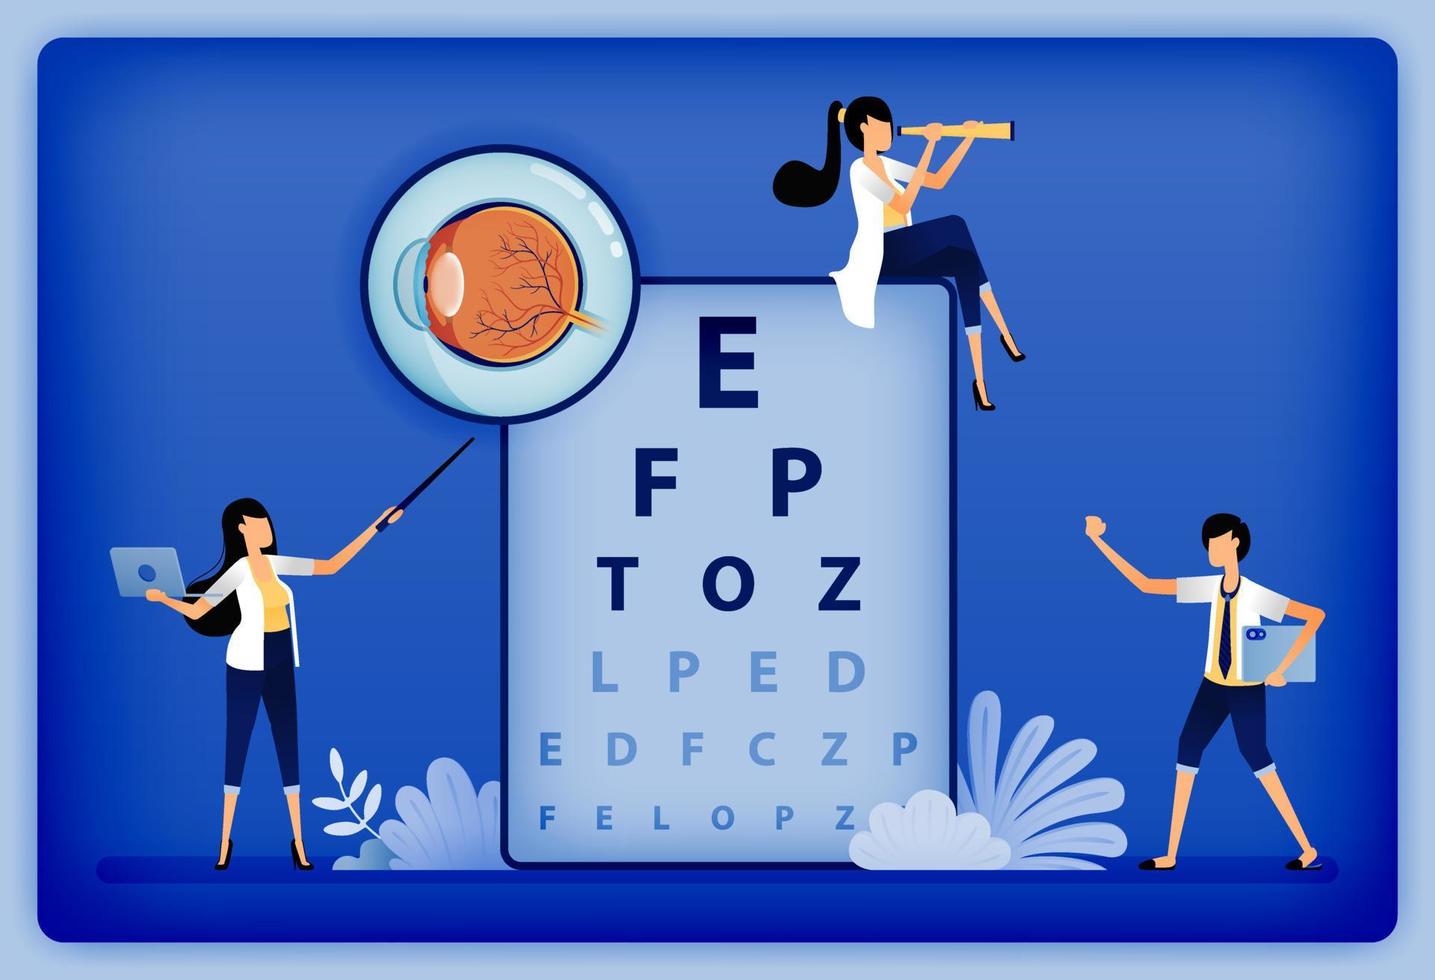 l'illustrazione della salute ottica dell'oftalmologo spiega la parte danneggiata della retina usando l'anatomia dell'occhio e lo snellen. può essere utilizzato per landing page, web, sito web, poster, app mobili, brochure, annunci, volantini, biglietti vettore